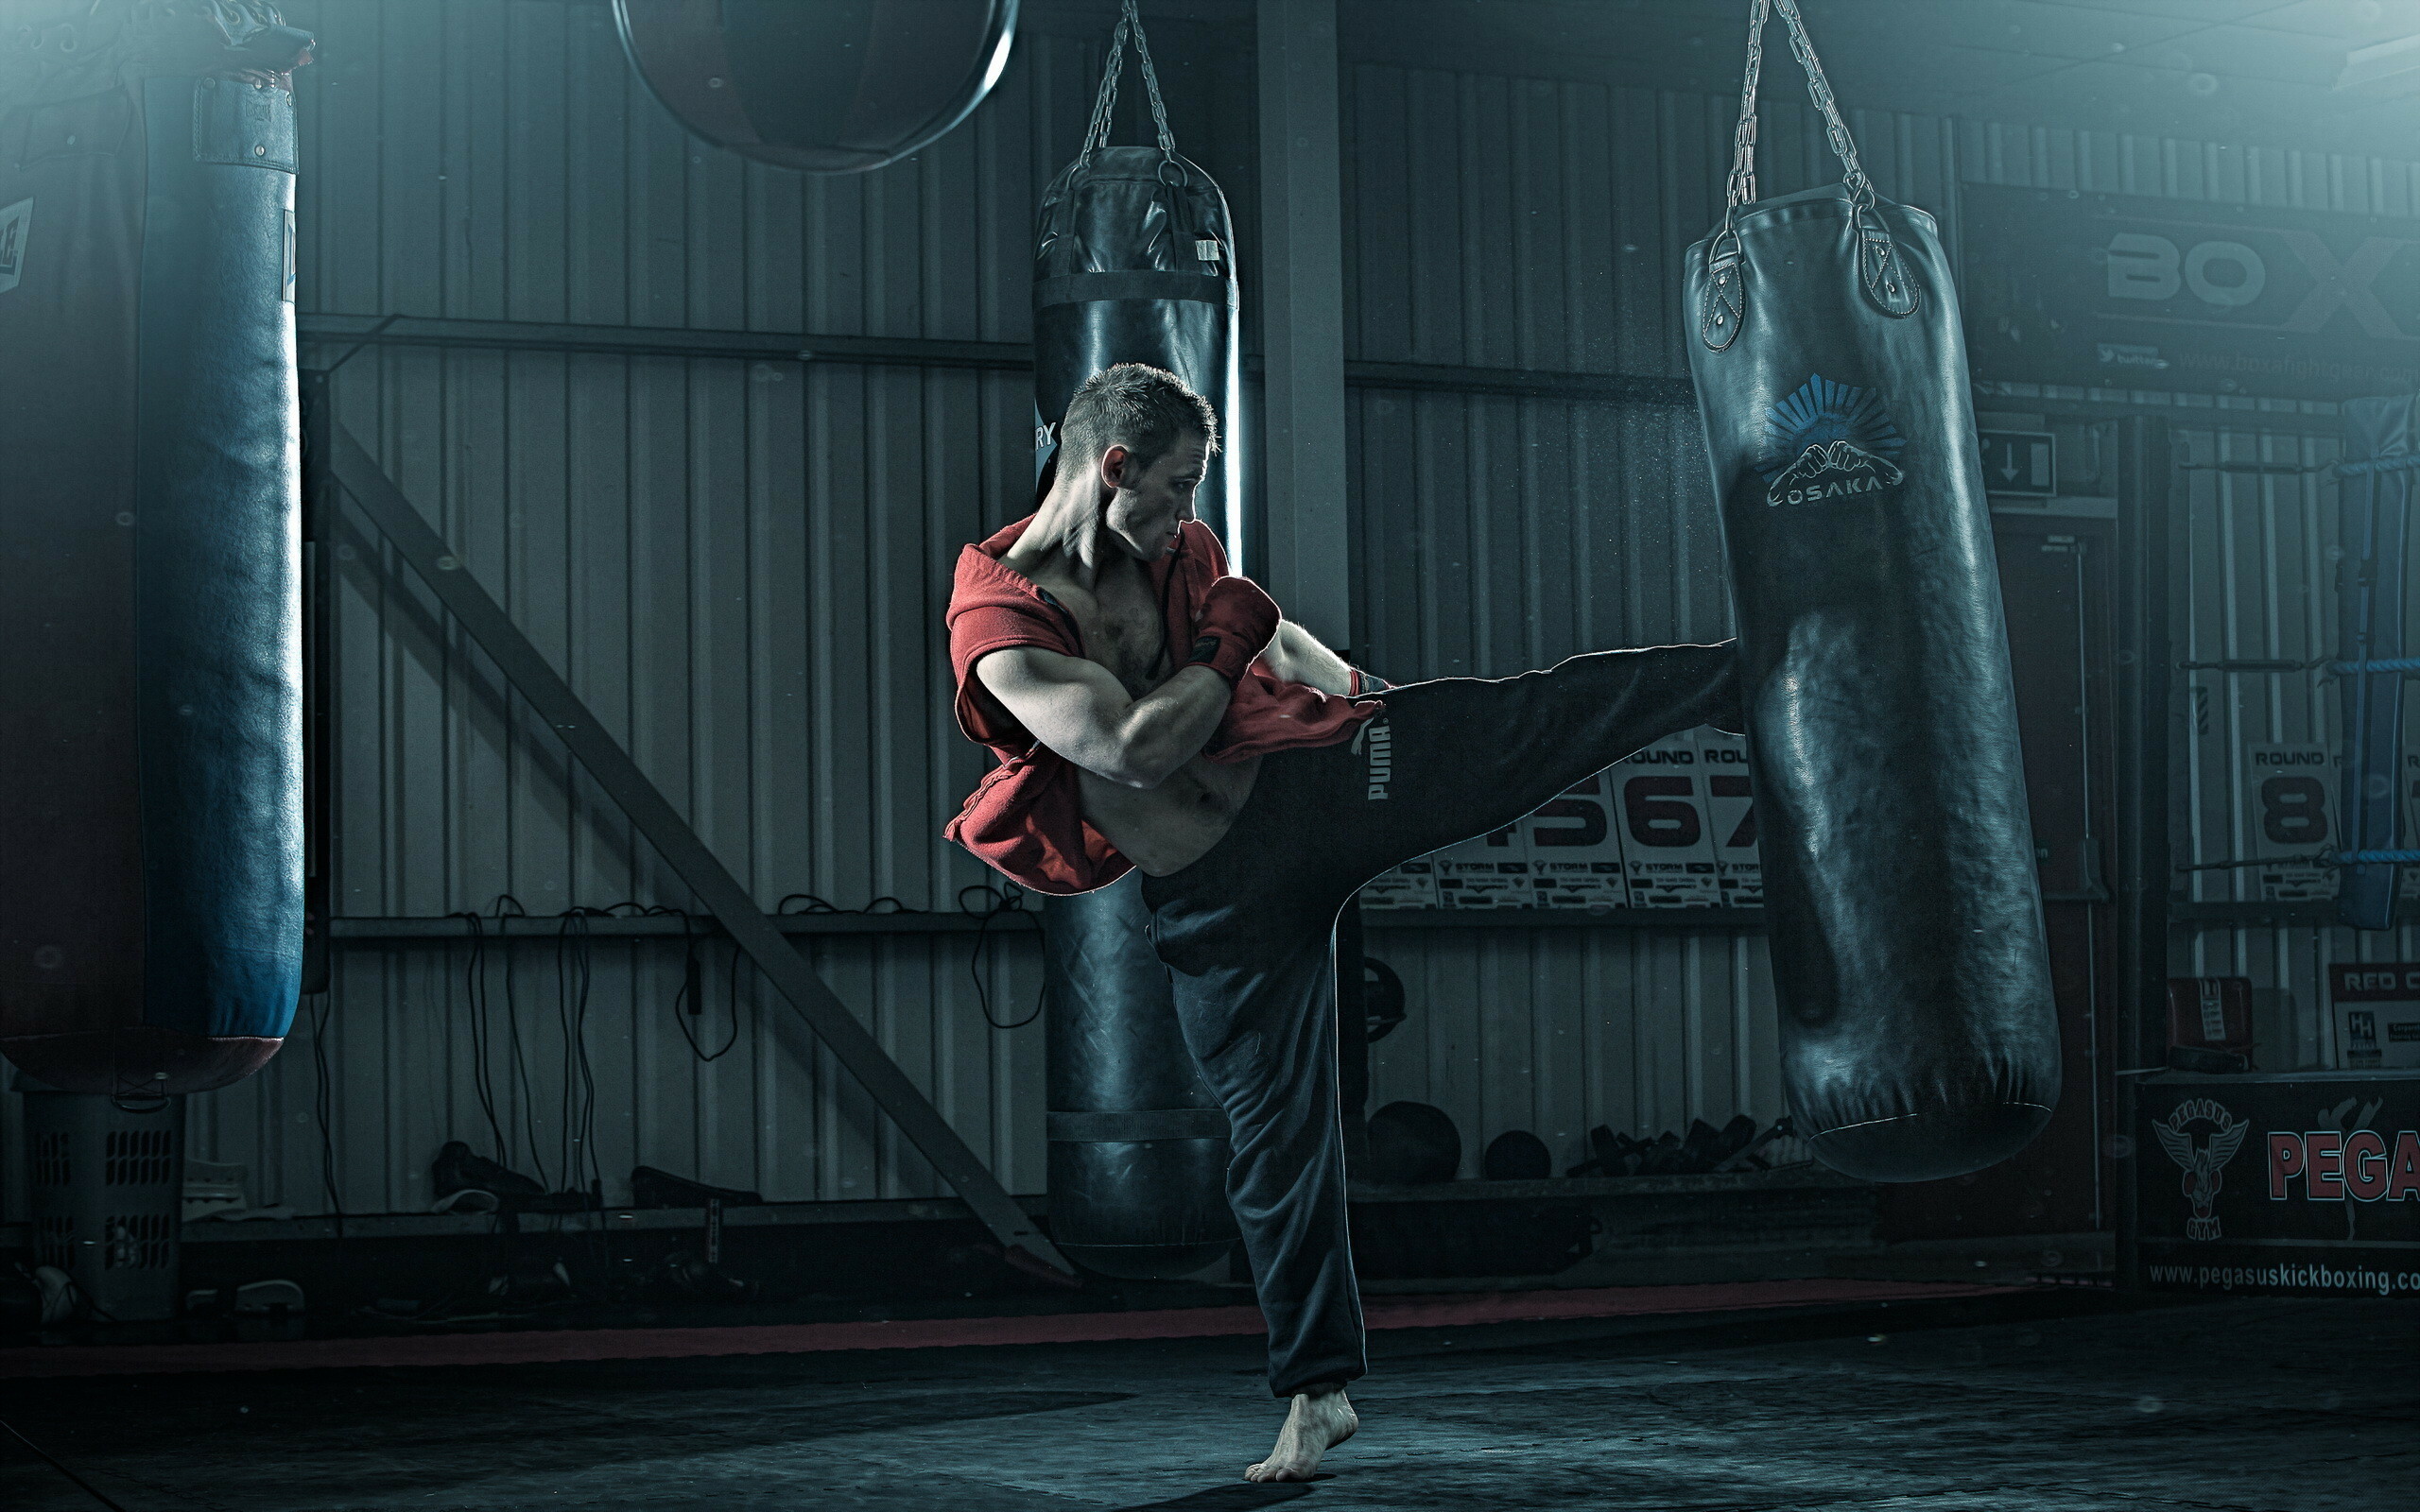 Kickboxing warriors, Fighter's strength, Intense combat, Martial arts, 2560x1600 HD Desktop